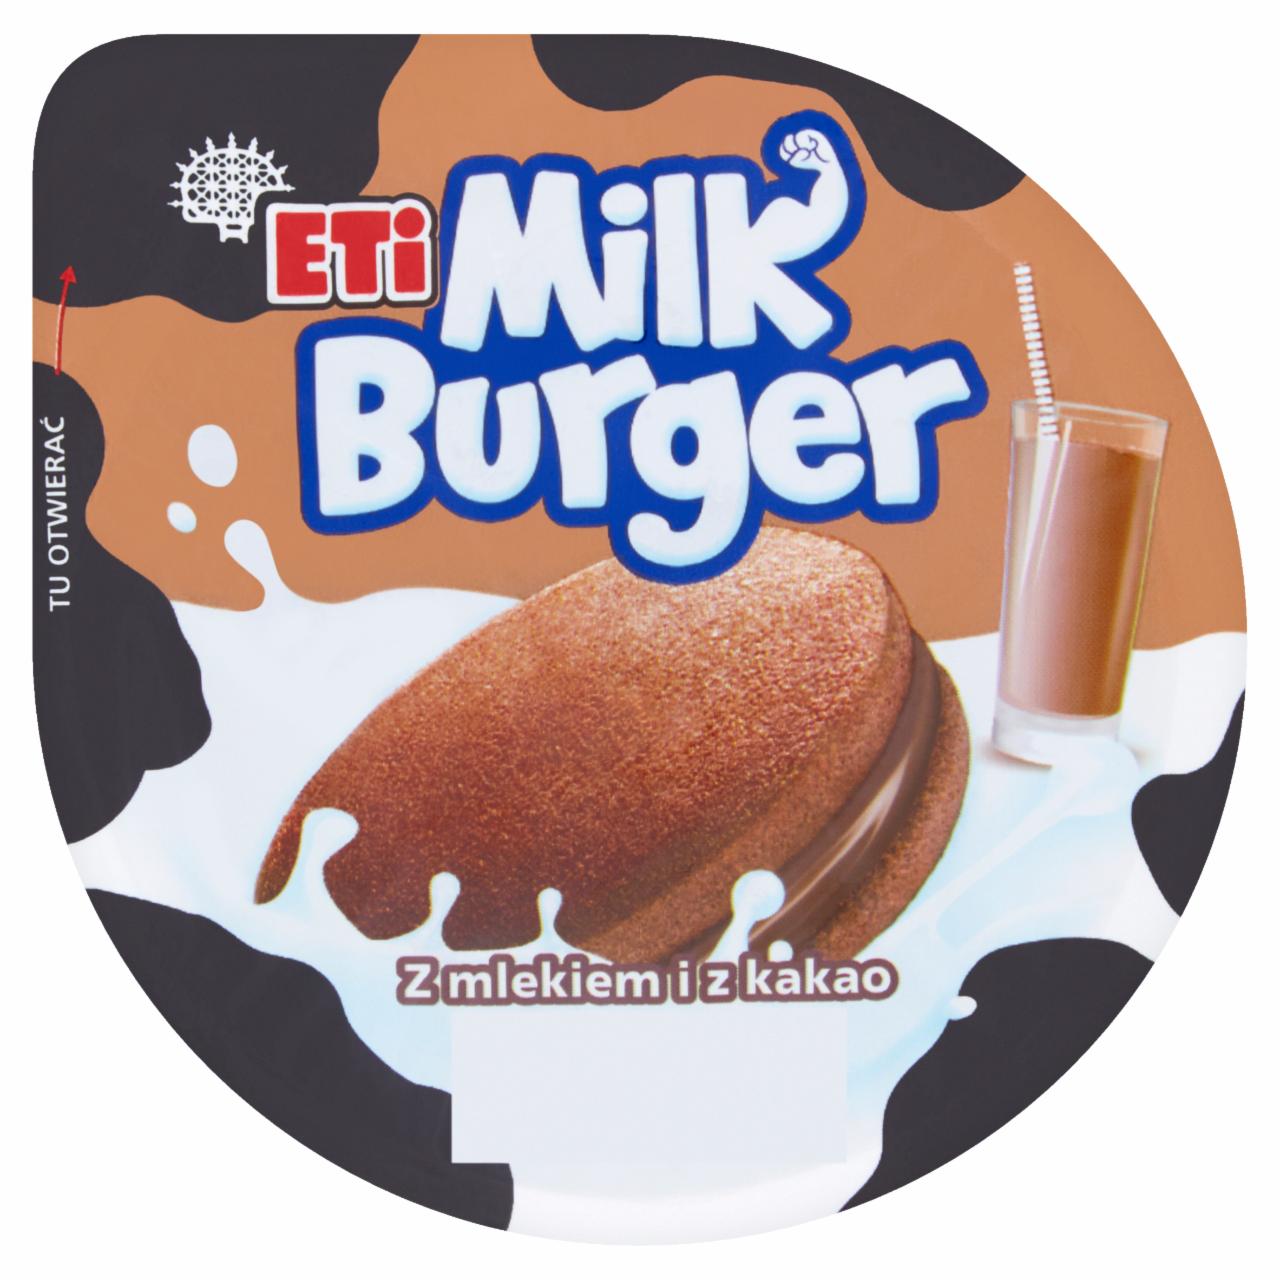 Zdjęcia - Eti Milk Burger Kakaowe ciastko z mlekiem i z kakao 35 g